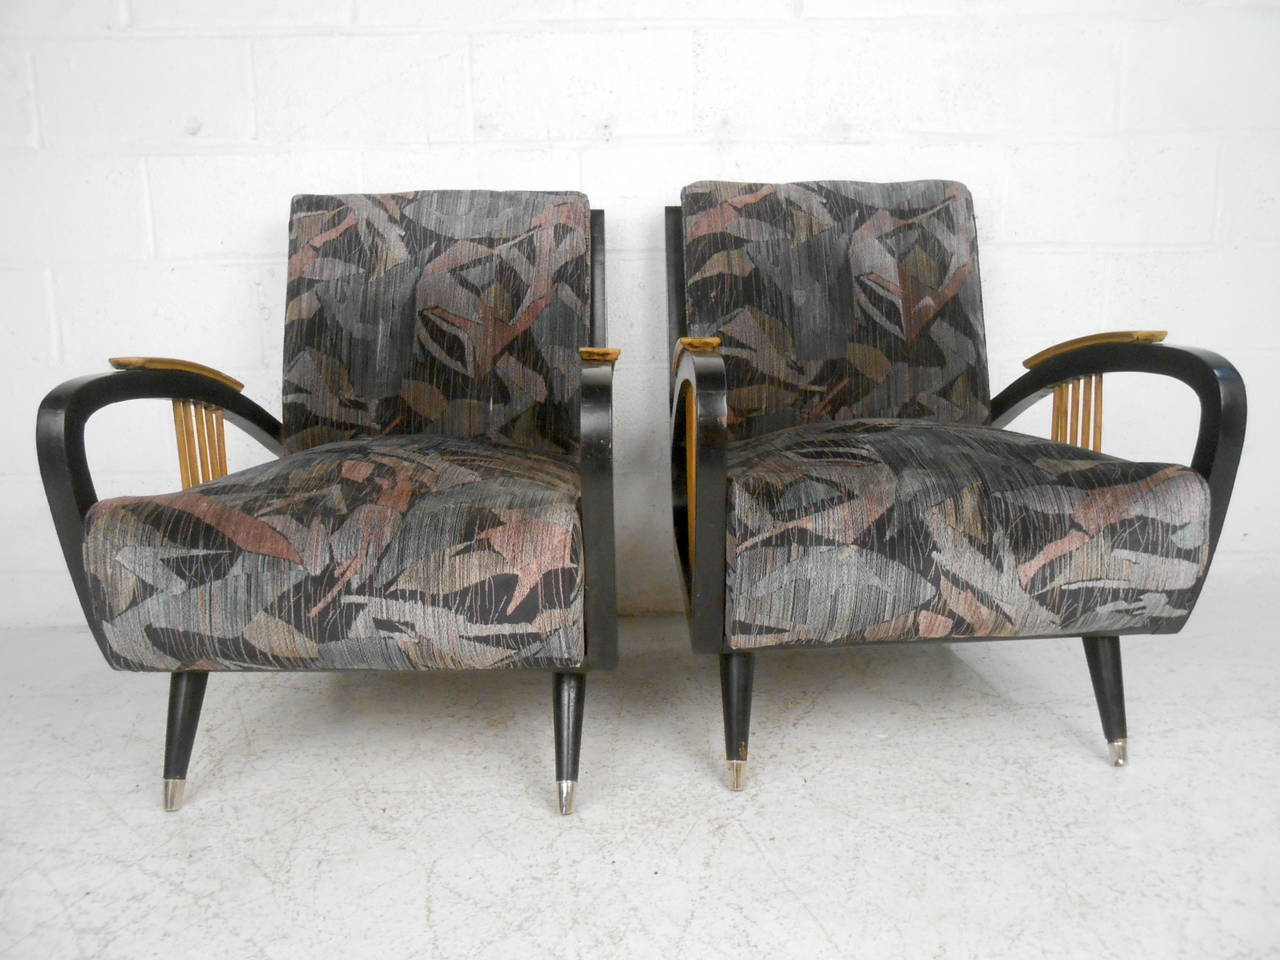 Cette paire de fauteuils de salon italiens du milieu du siècle dernier présente un cadre ébénisé, des pieds chromés et des accoudoirs uniques en forme de fuseau qui apportent une touche de modernité à la maison ou au bureau. 

Veuillez confirmer